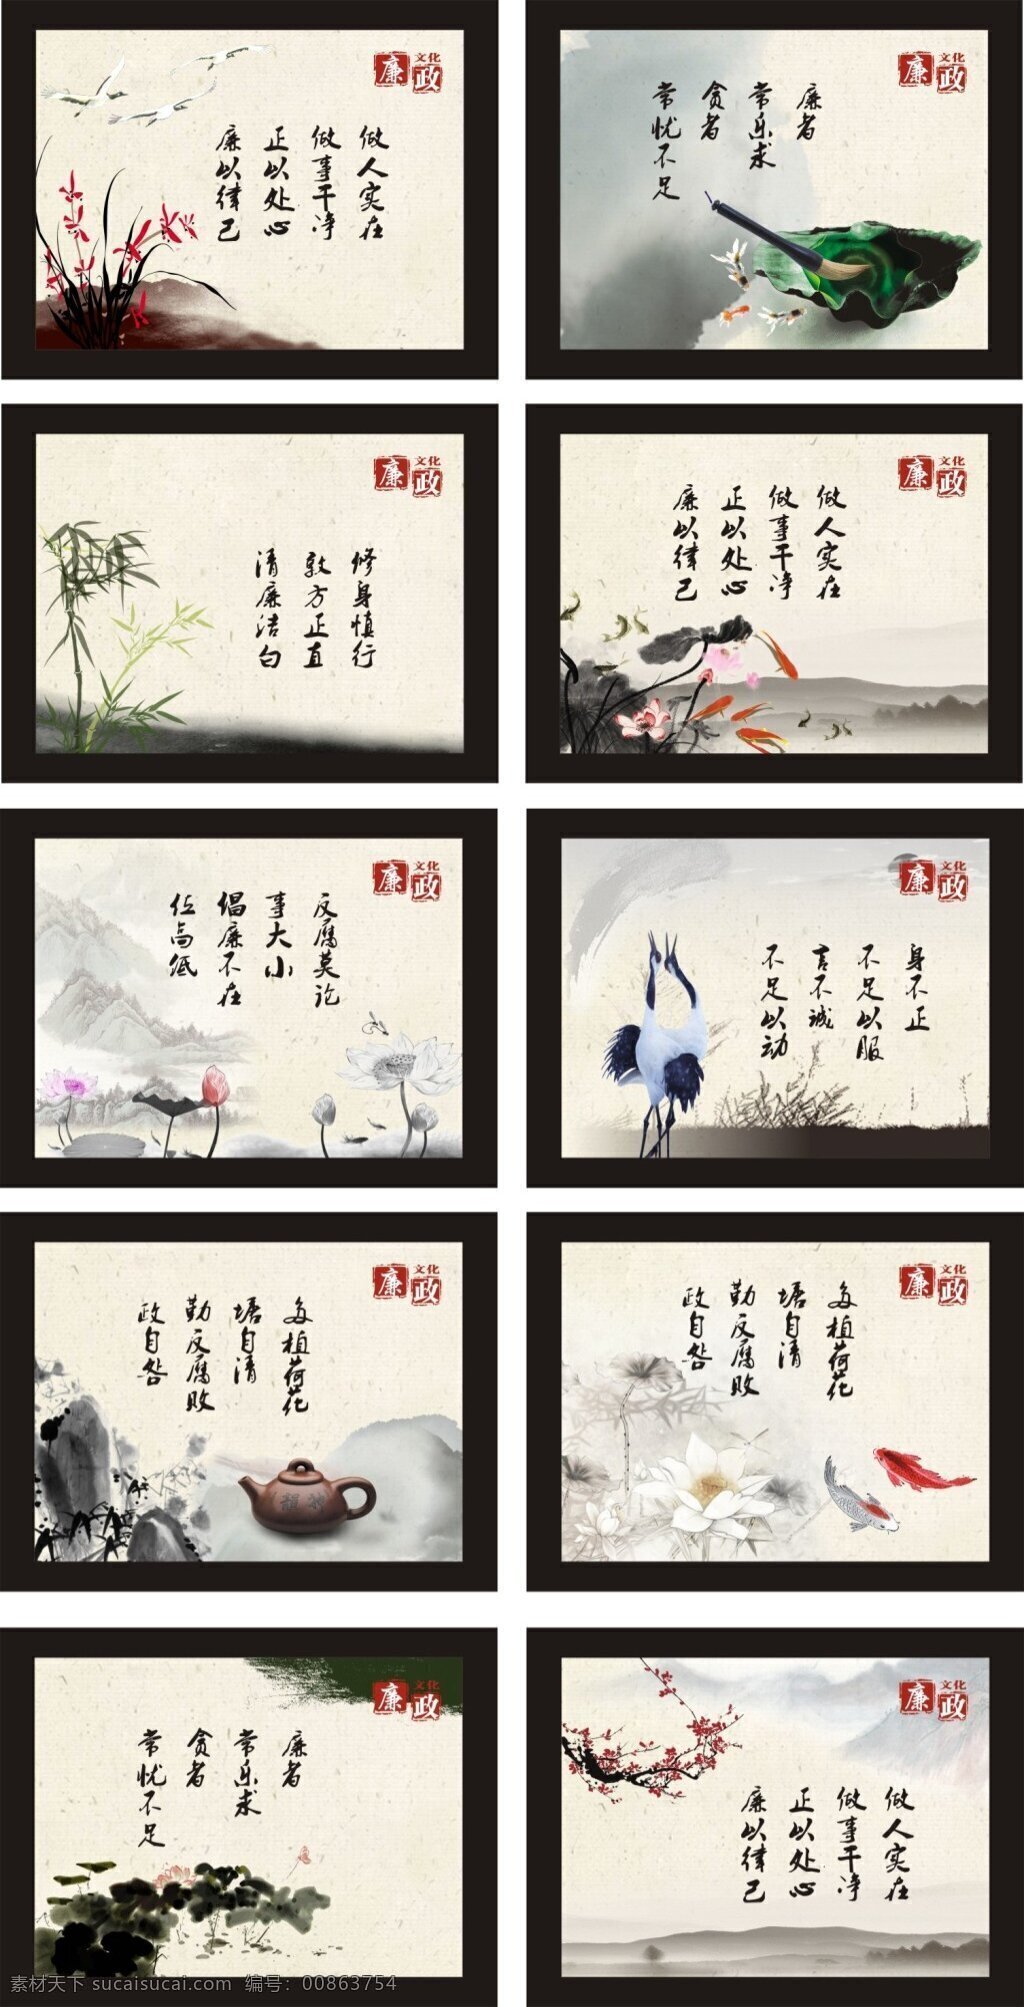 中国 风 水墨画 廉政文化 中国风 背景 幅 用于 墙面 装饰 挂画 或者屏风